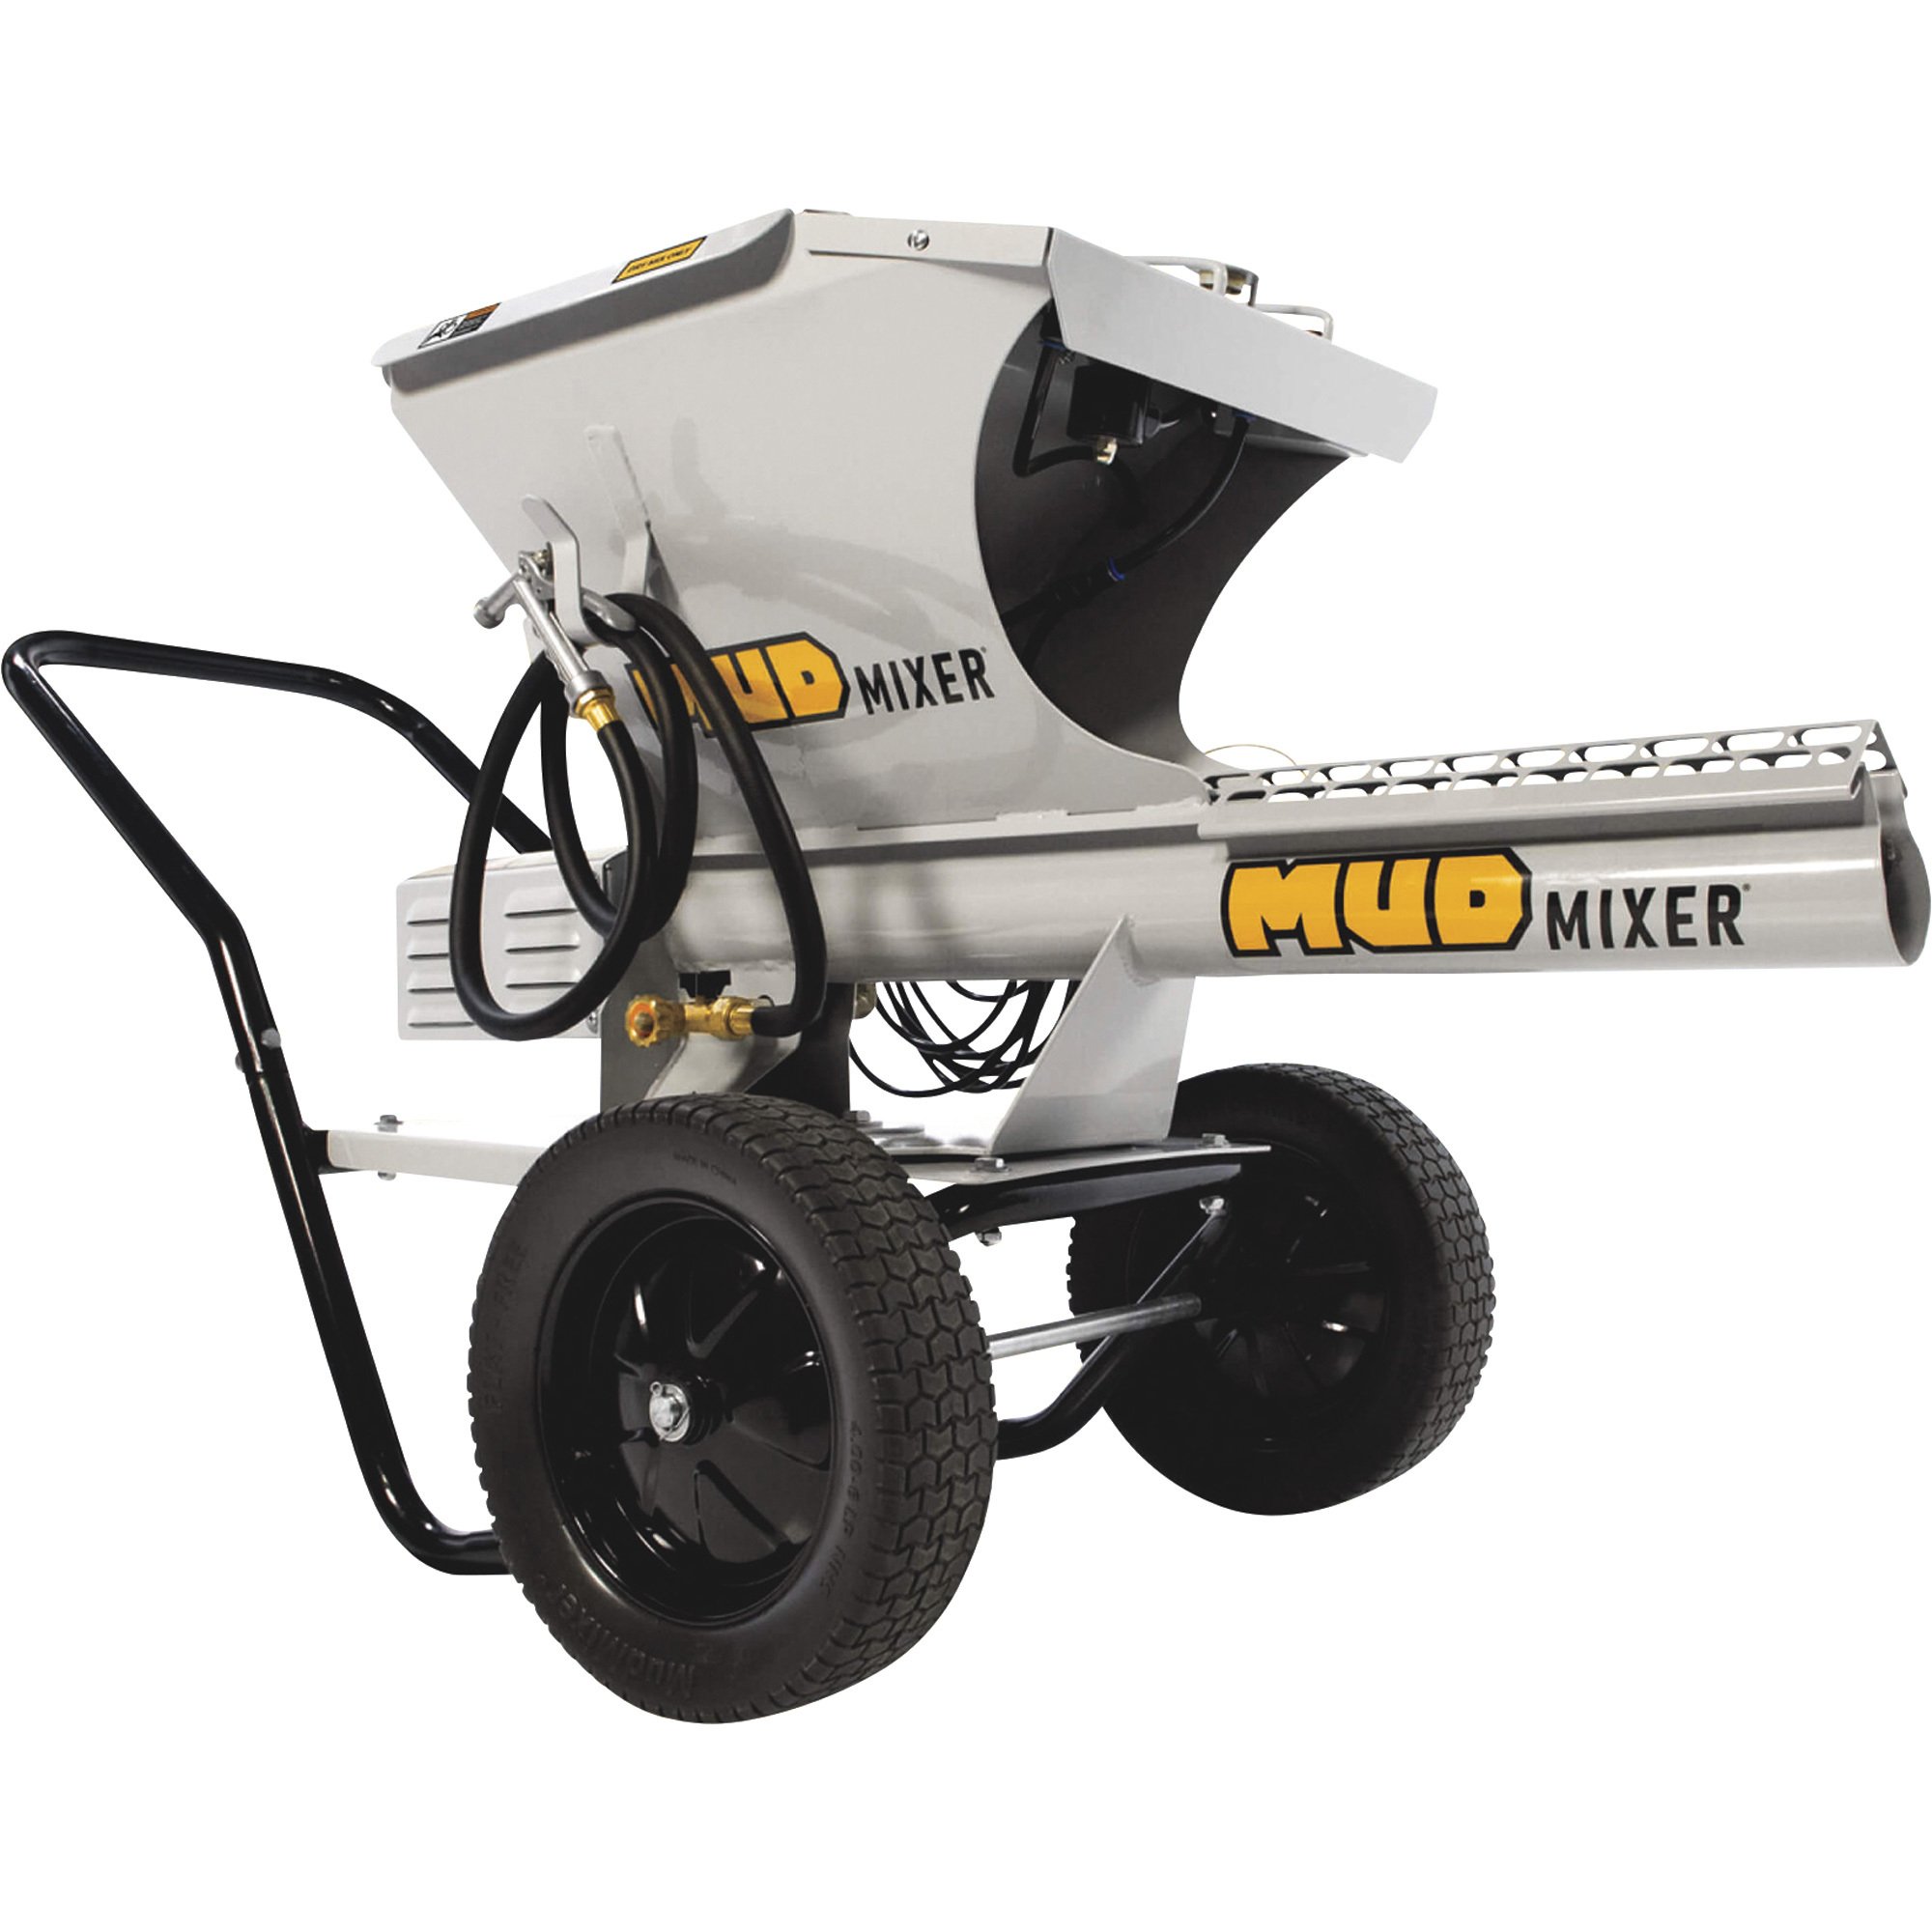 Mud Mixer Cement — 120-Lb. Hopper Capacity, Model# MMXR-3221 | Tool